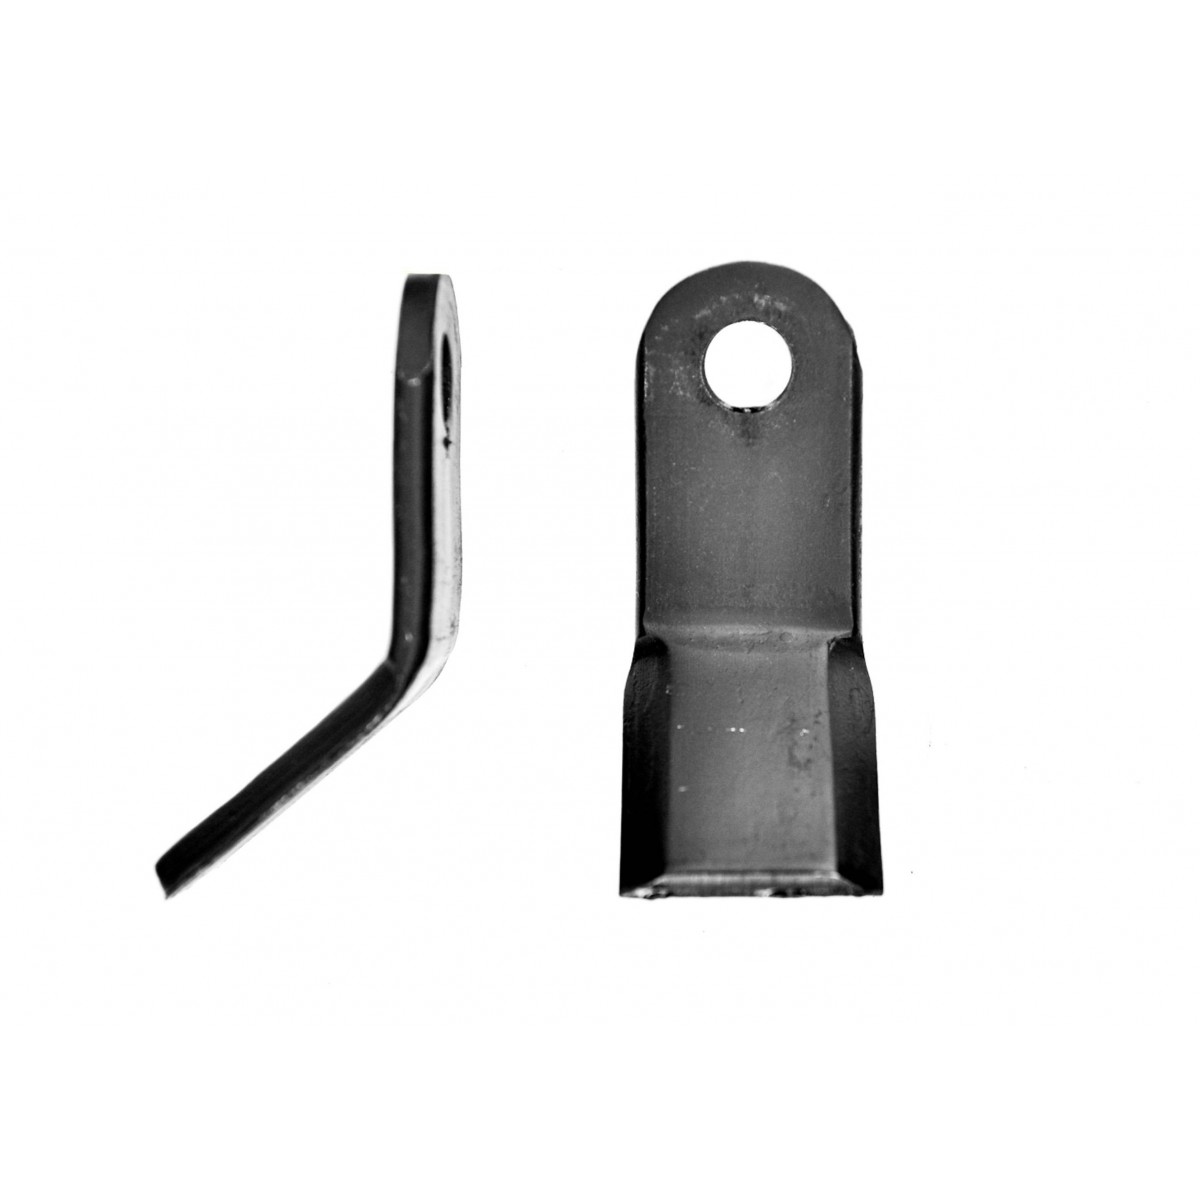 Mayal, cuchillo tipo Y, martillo, martillo para cortacésped EFGCH / DP / DPS / AG / AGF / 16 mm, 330 g